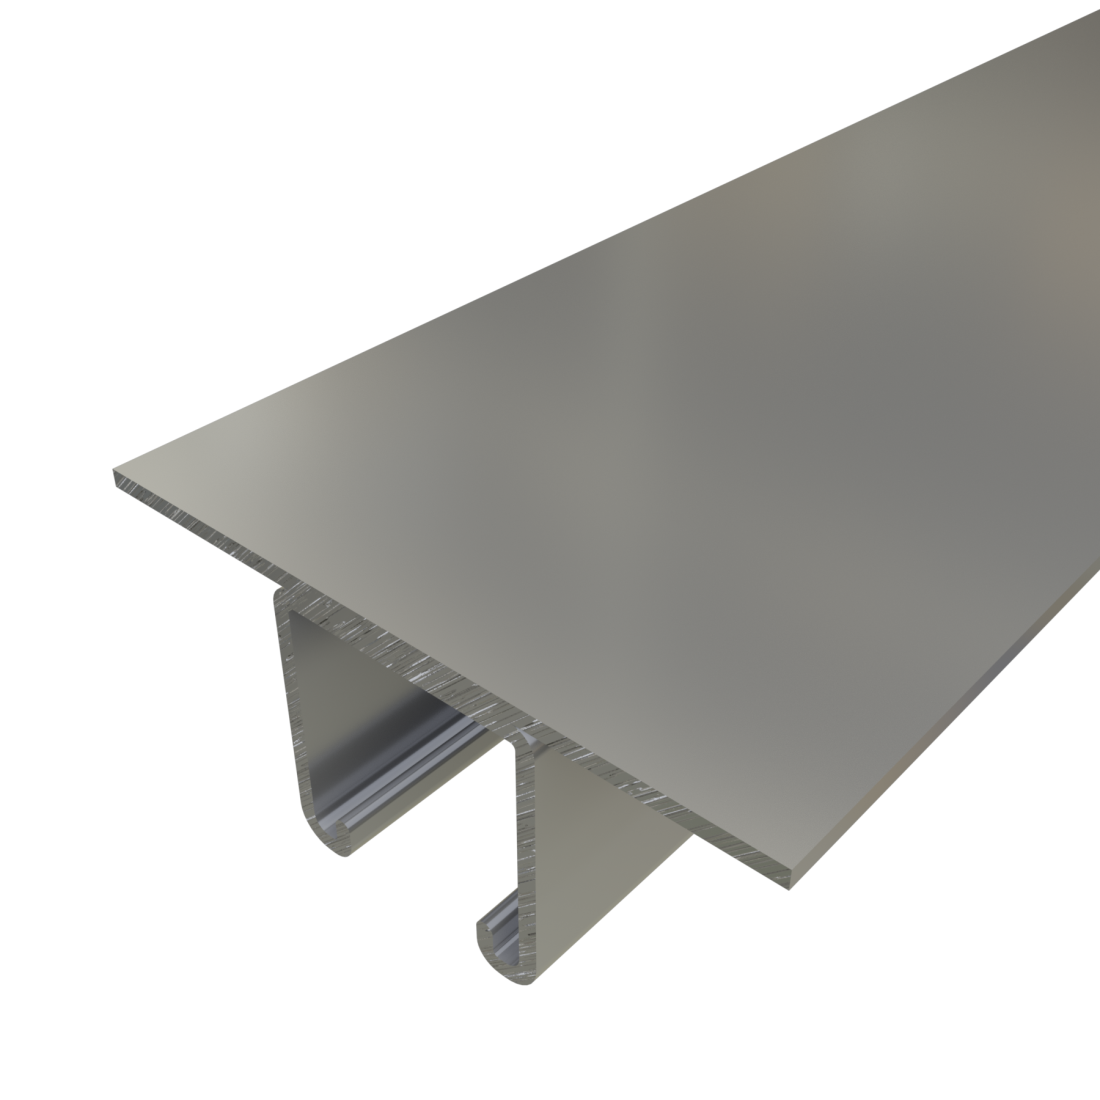 Unistrut P1003 - 1 5/8" x 1 5/8", 12 Gauge, Metal Framing Strut, With 4 1/32" Wide Plate